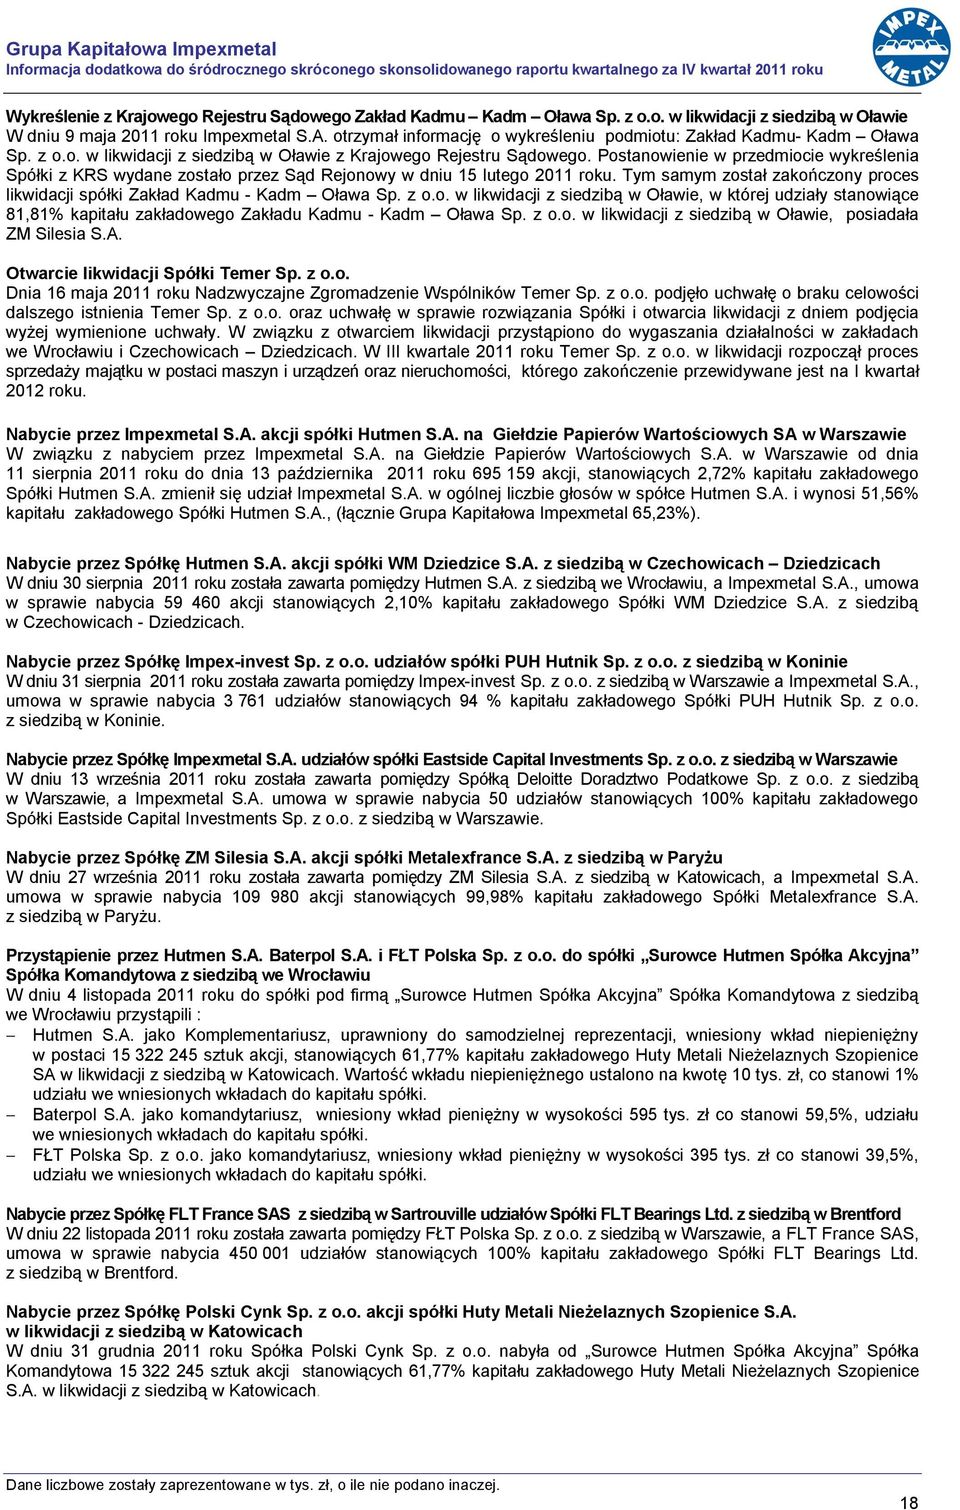 Postanowienie w przedmiocie wykreślenia Spółki z KRS wydane zostało przez Sąd Rejonowy w dniu 15 lutego 2011 roku. Tym samym został zakończony proces likwidacji spółki Zakład Kadmu - Kadm Oława Sp.